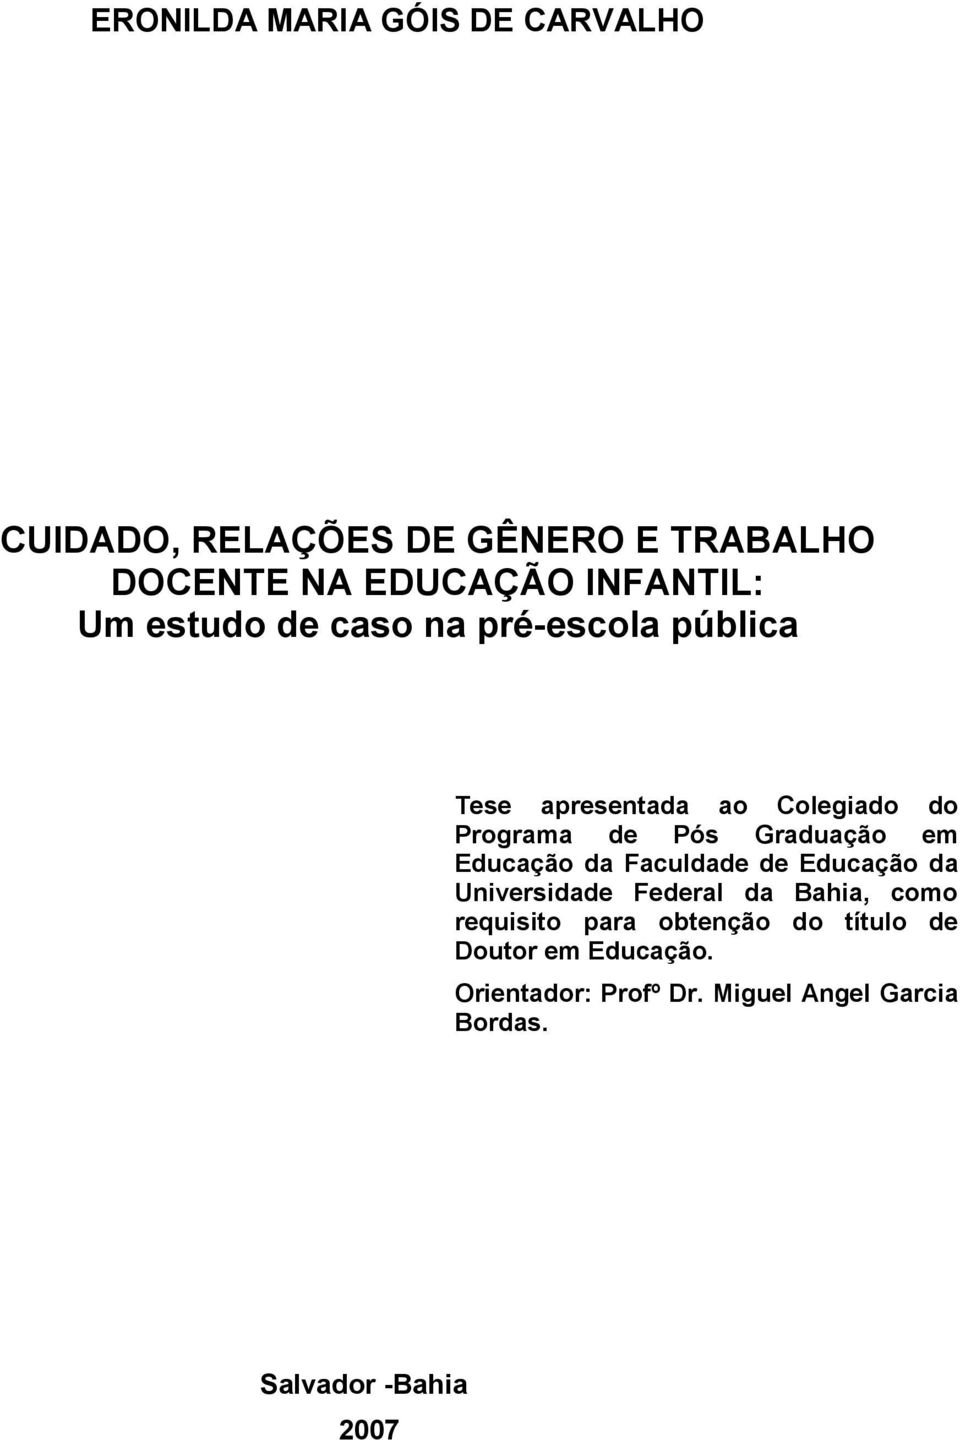 em Educação da Faculdade de Educação da Universidade Federal da Bahia, como requisito para obtenção